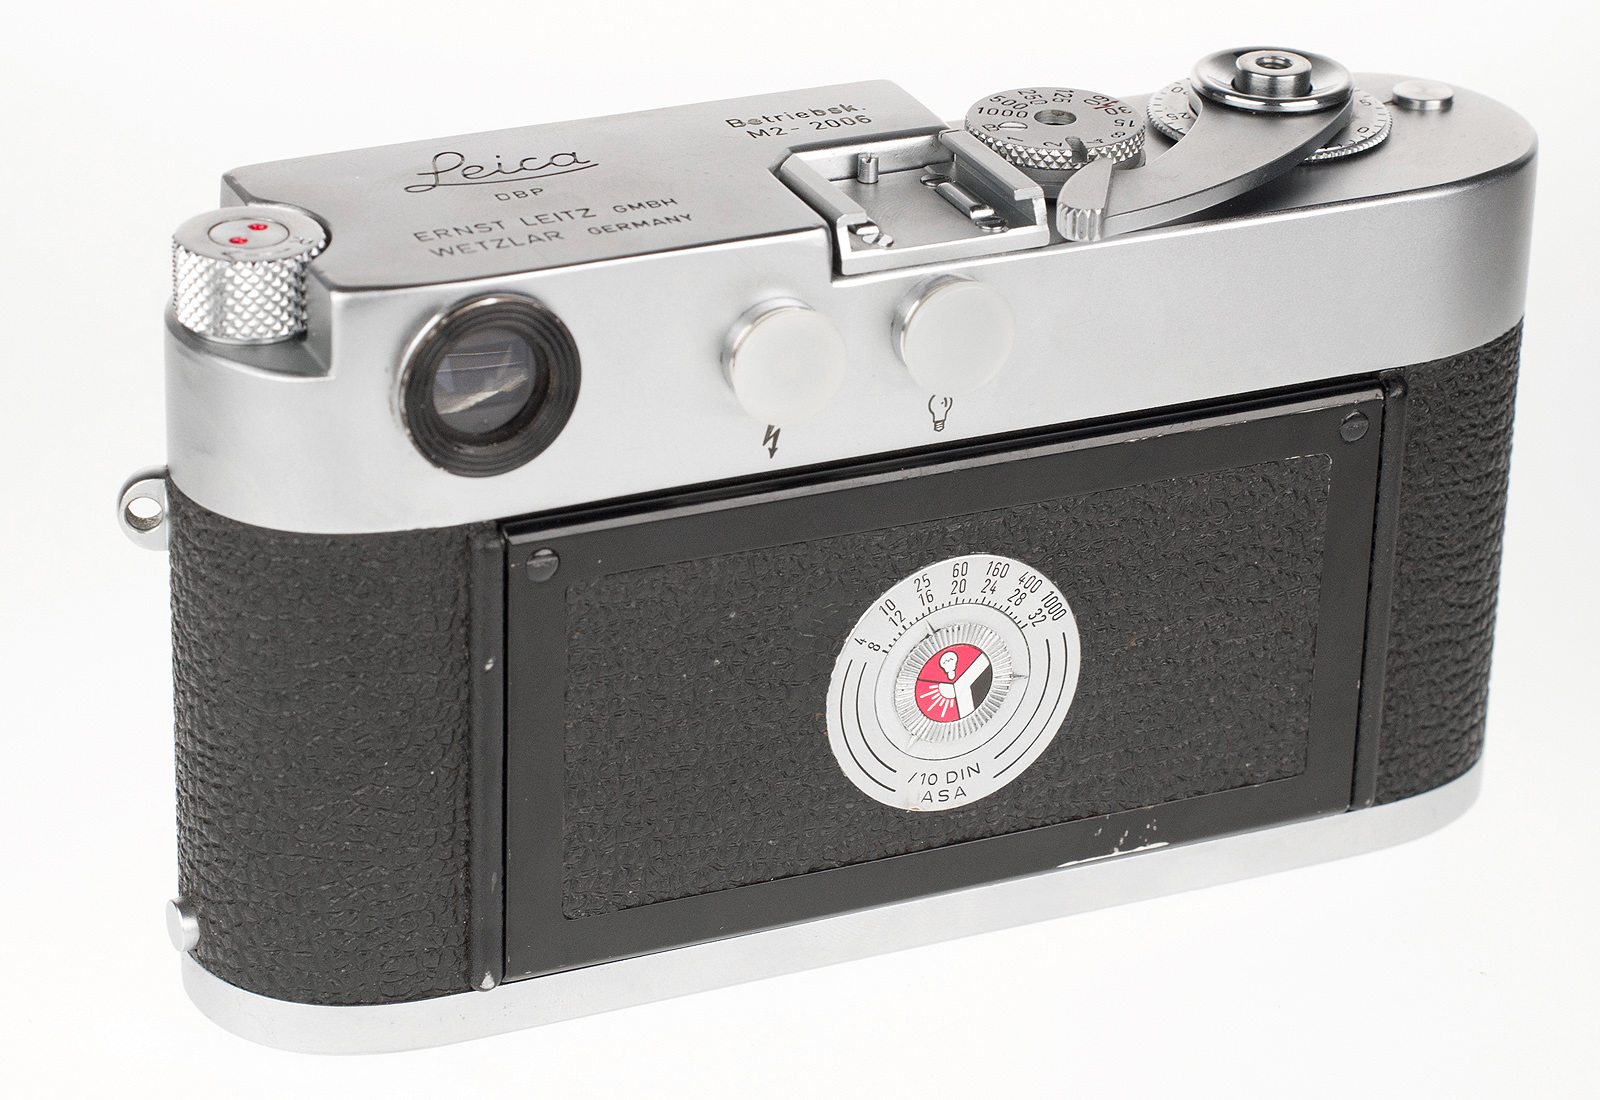 Leica M2 Betriebsk. #2006 Button Rewind 10300